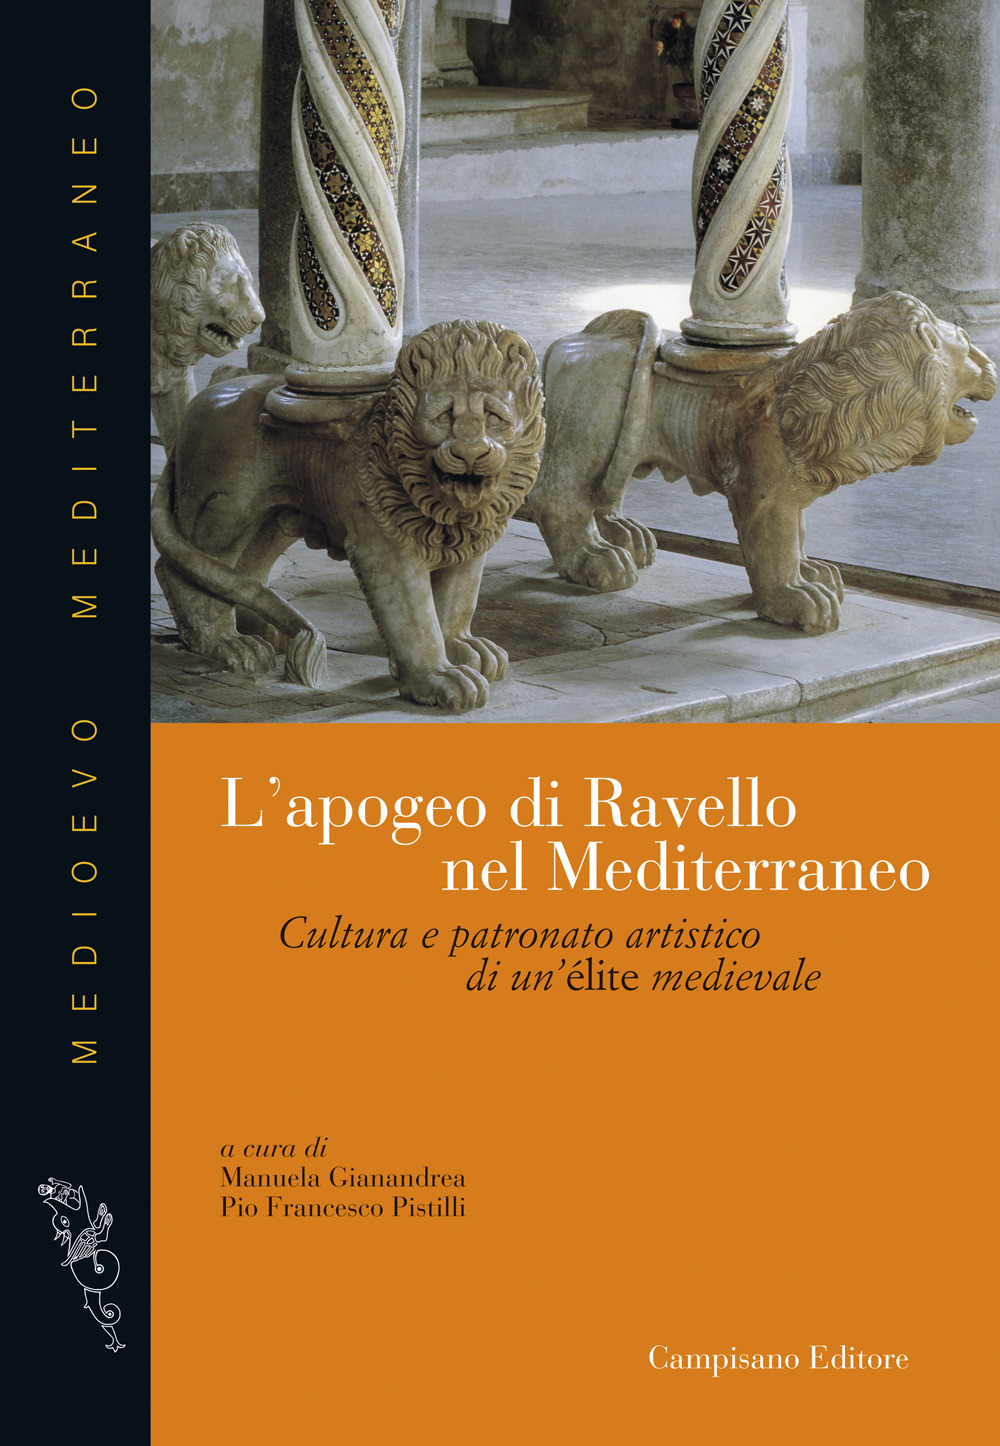 L'apogeo di Ravello nel Mediterraneo. Cultura e patronato artistico di una élite medievale